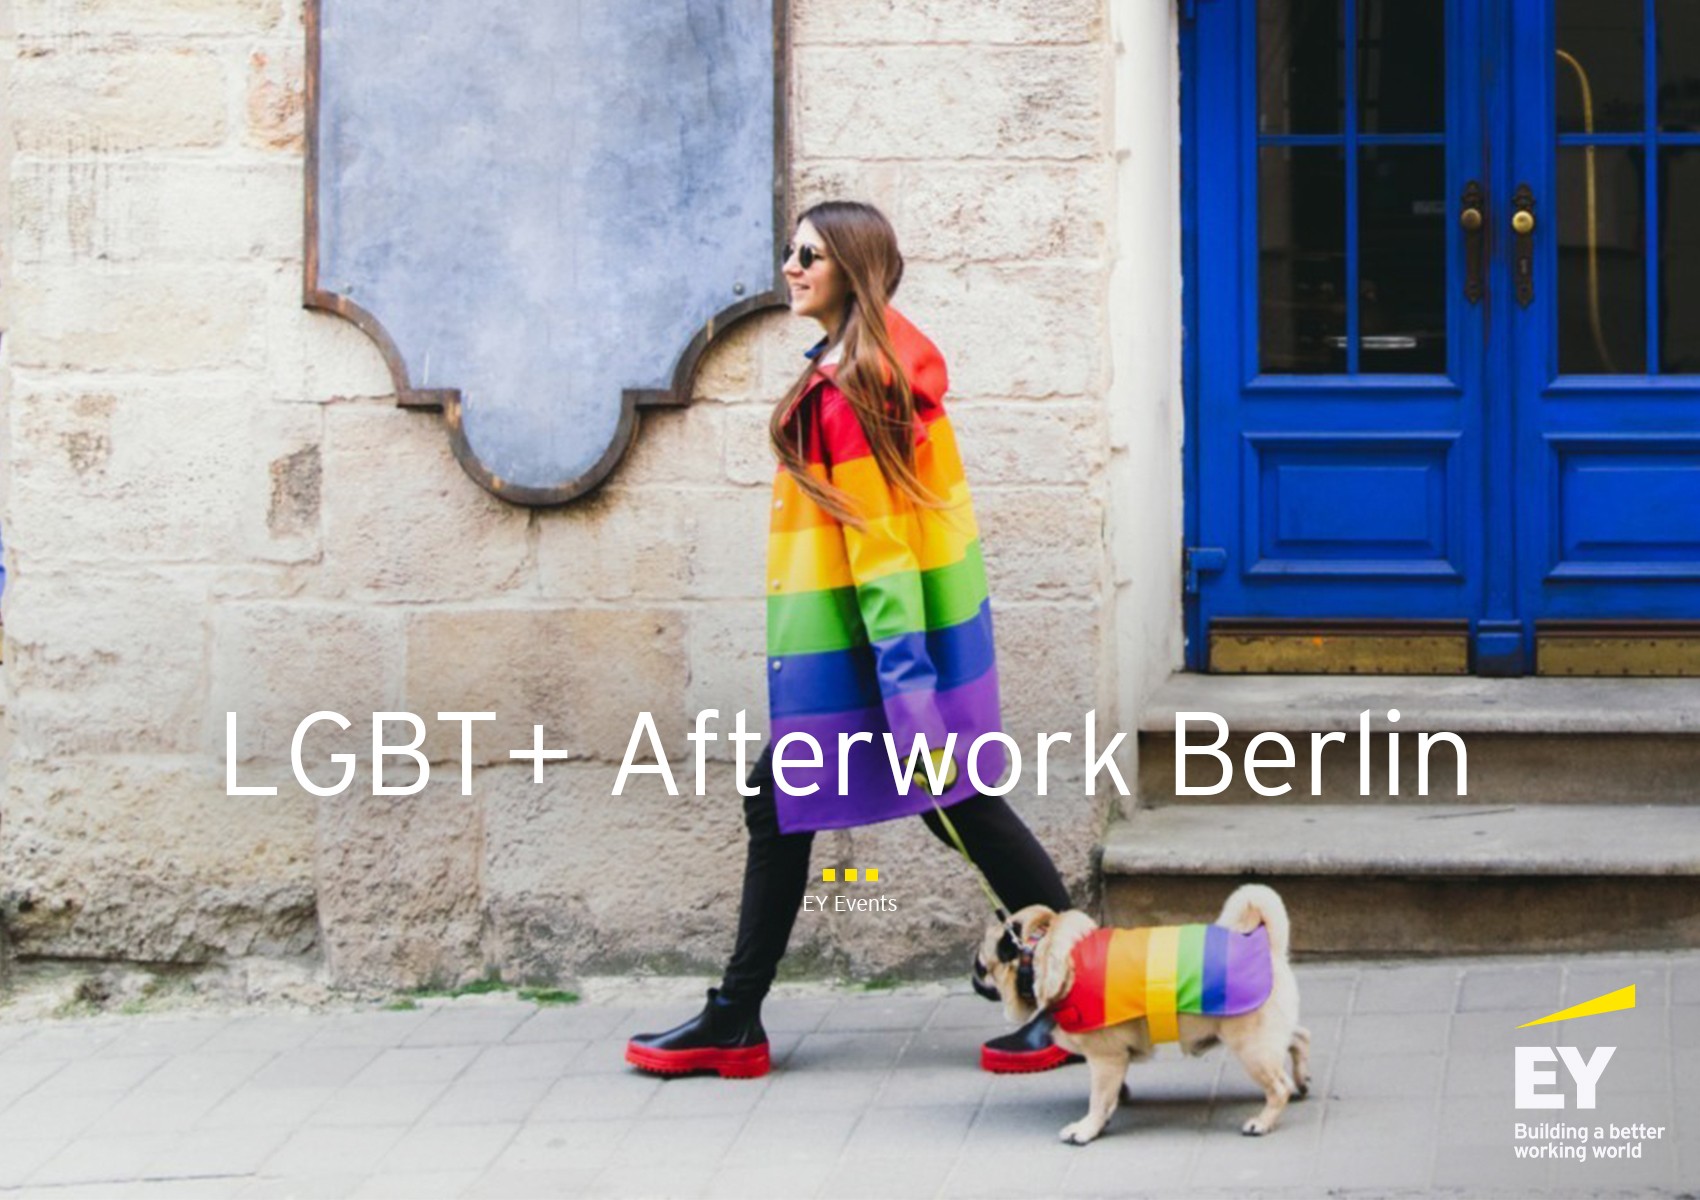 Karriere-Event LGBT+ Afterwork Berlin